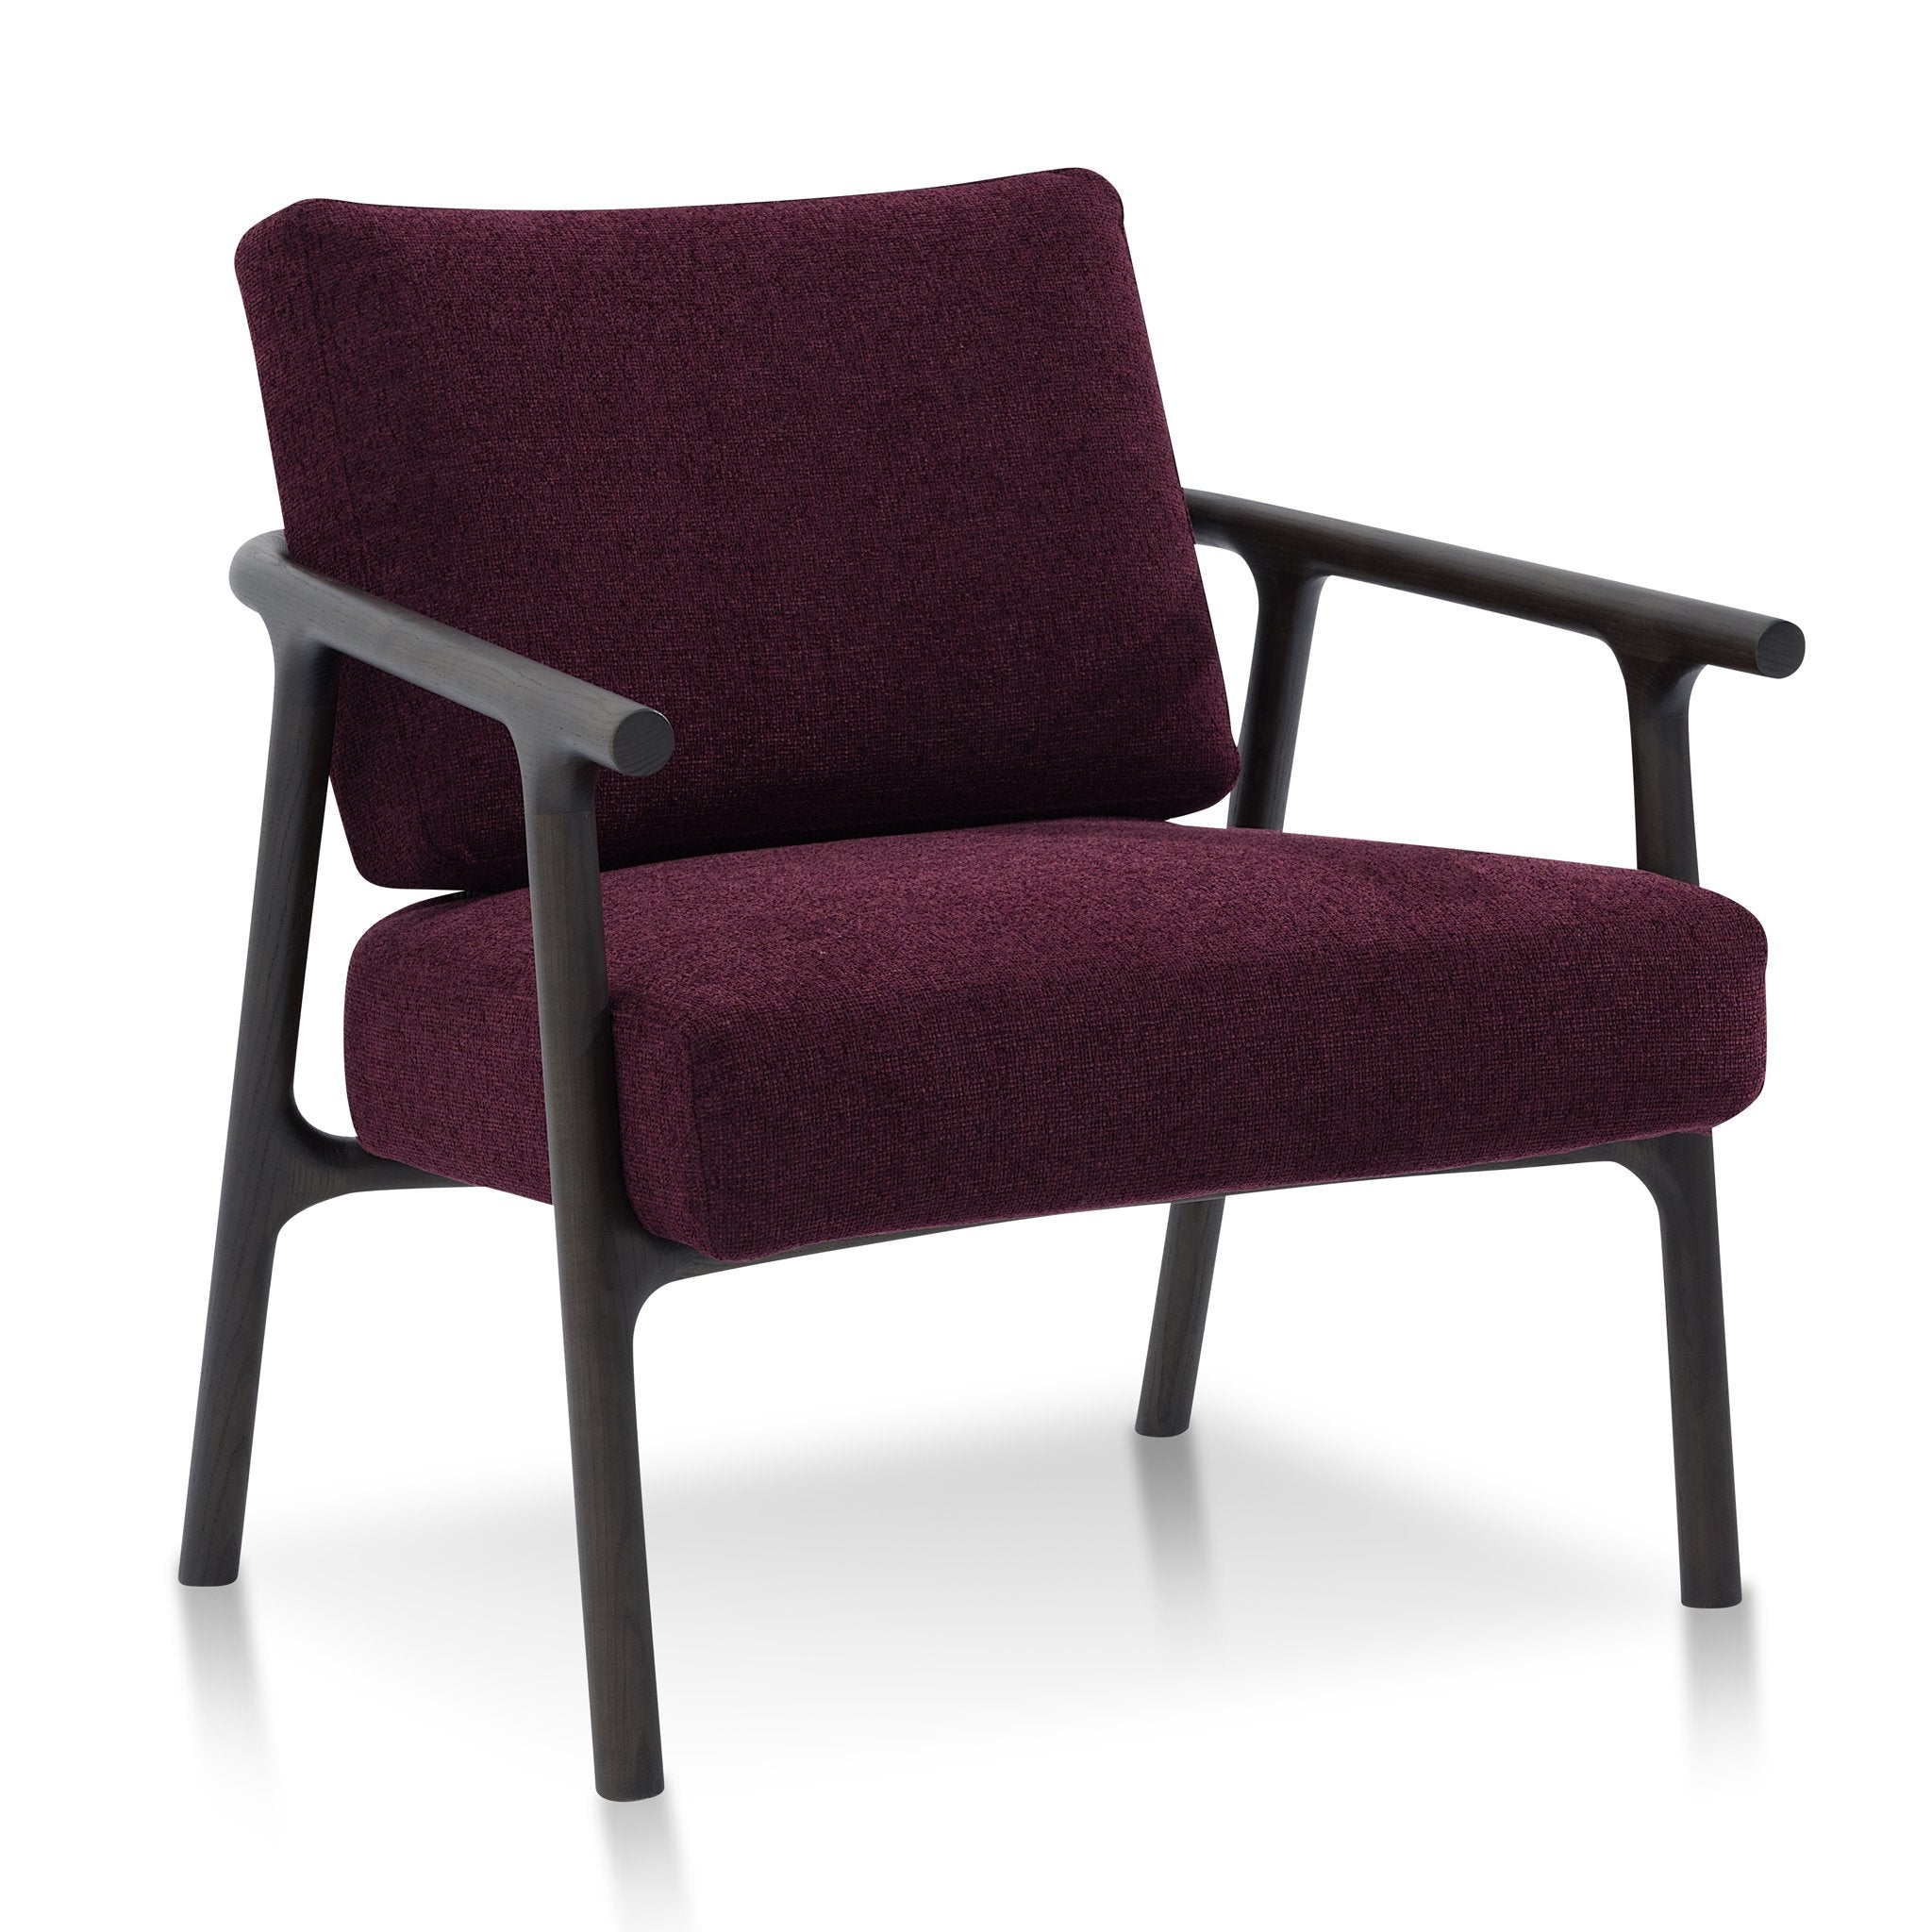 Delilah Fabric Armchair - Deep Burgundy with Black Legs